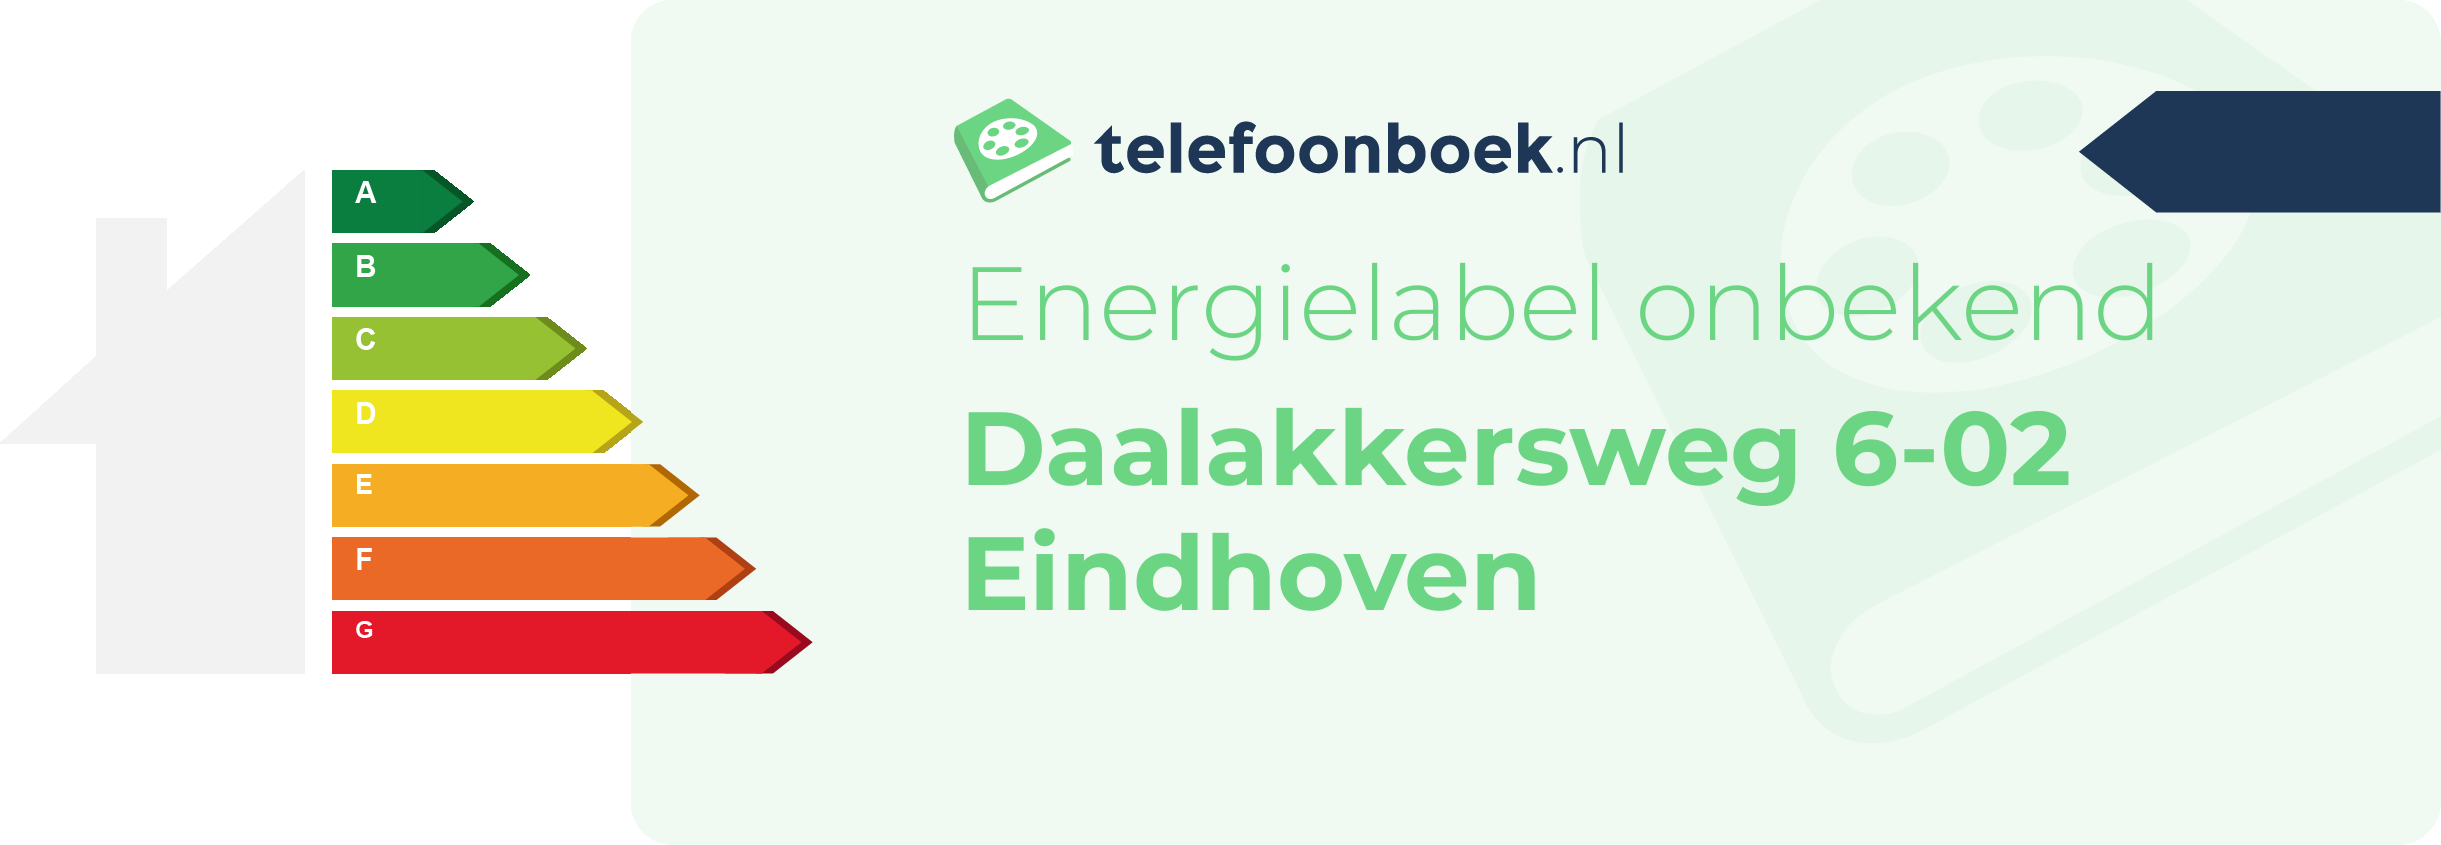 Energielabel Daalakkersweg 6-02 Eindhoven